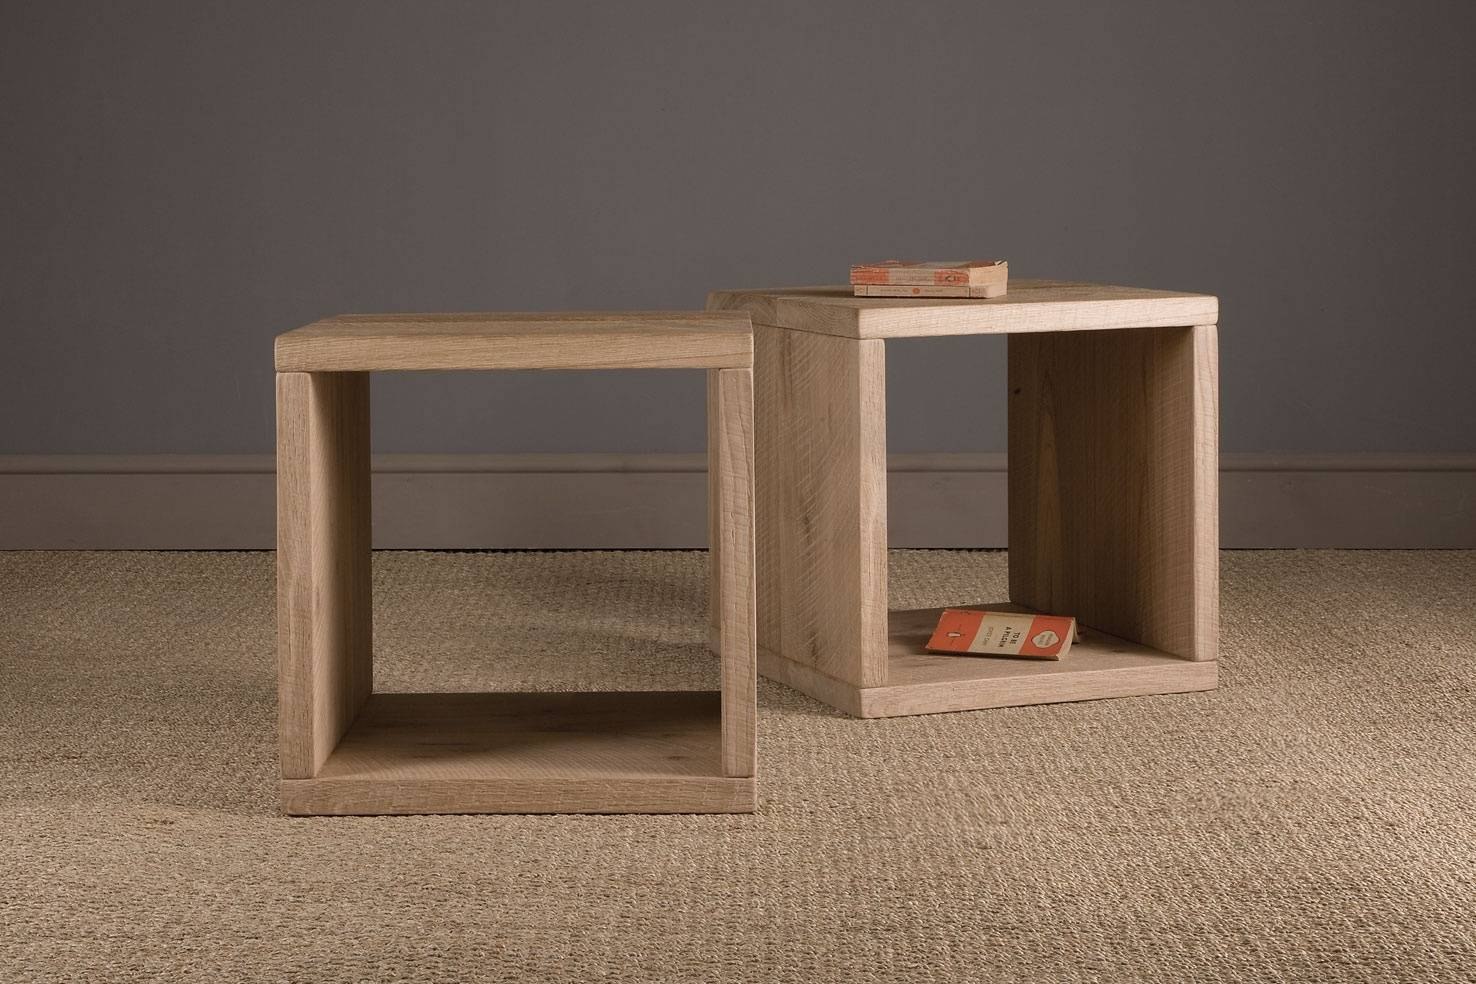 Тумба cube. Журнальный столик куб. Тумбочка куб. Журнальный столик из мебельного щита. Тумбочка куб из дерева.